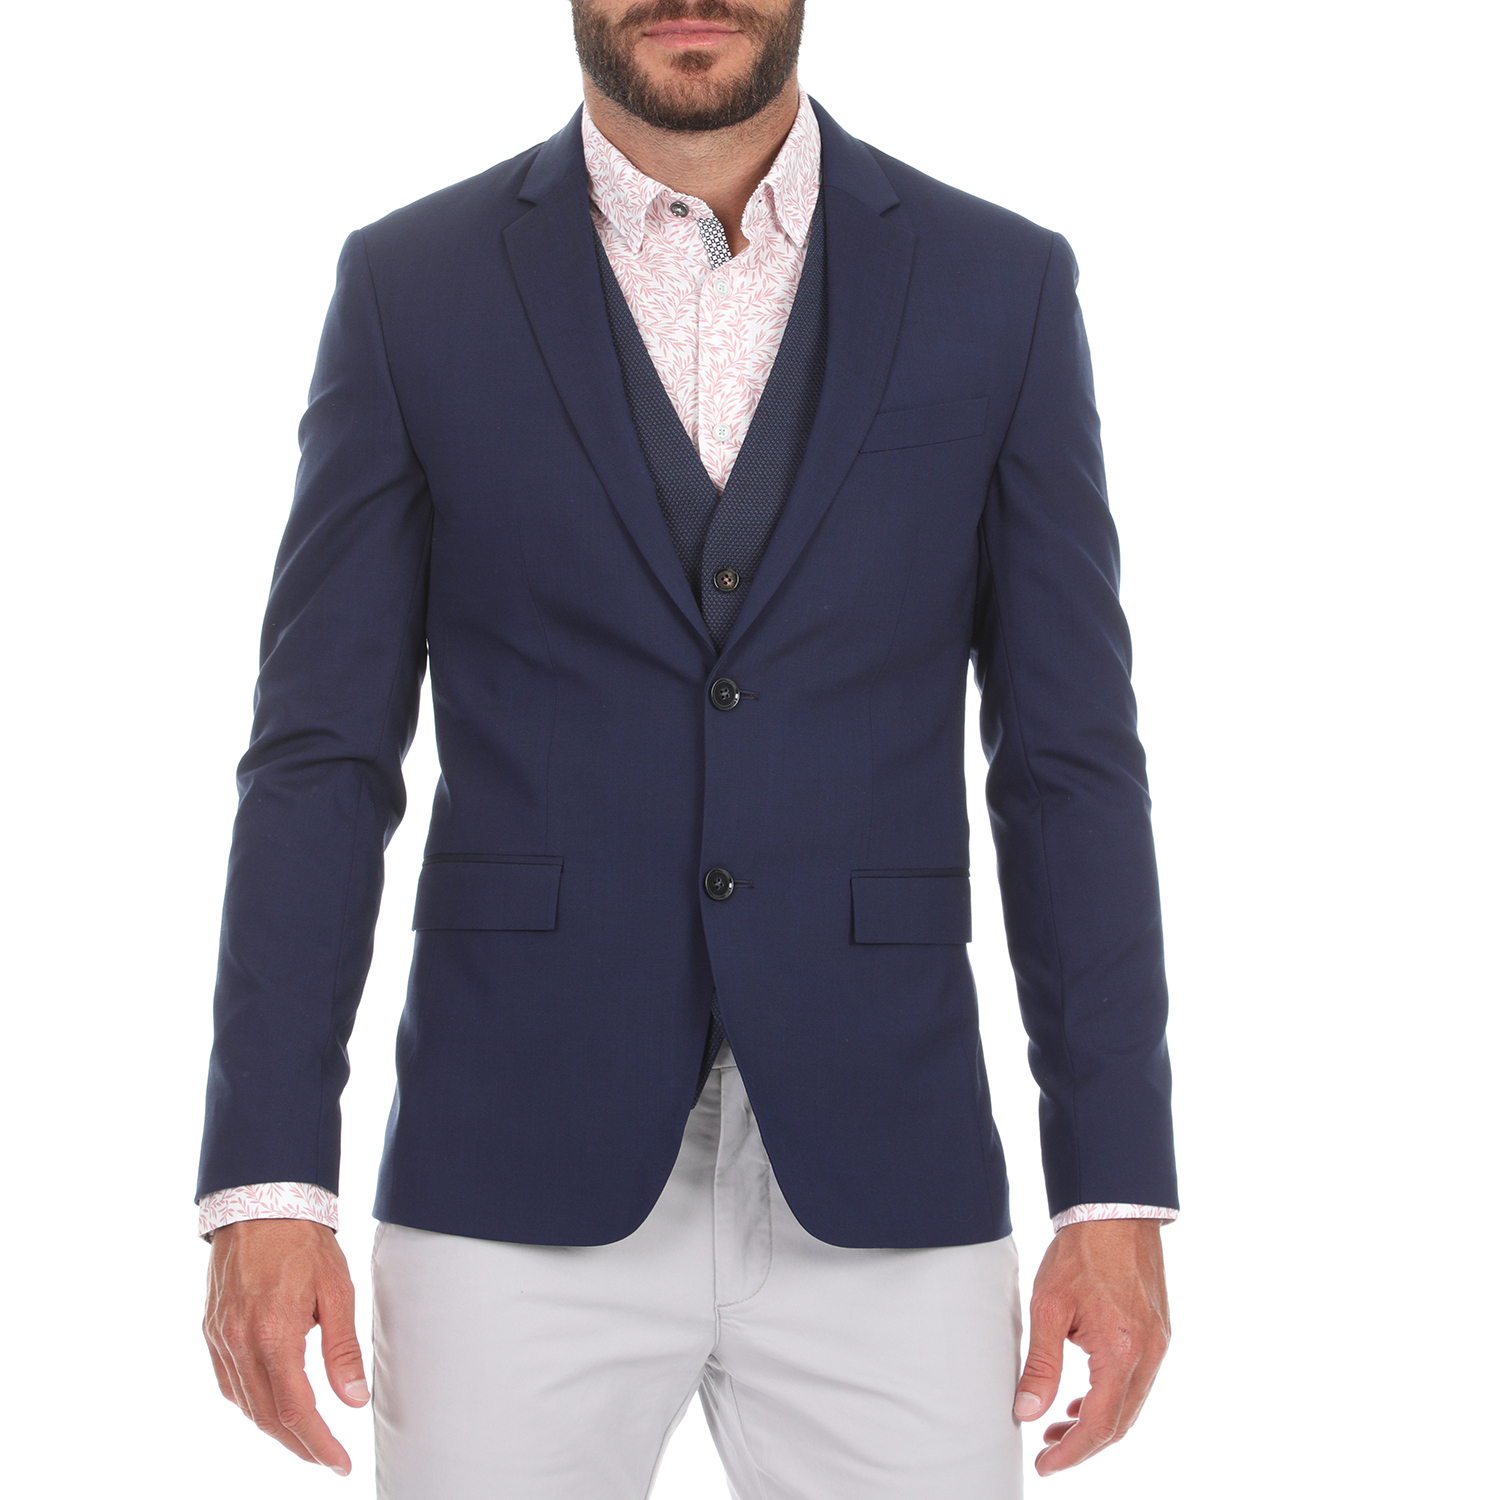 CK - Ανδρικό σακάκι CK STRETCH WOOL SLIM μπλε Ανδρικά/Ρούχα/Πανωφόρια/Σακάκια